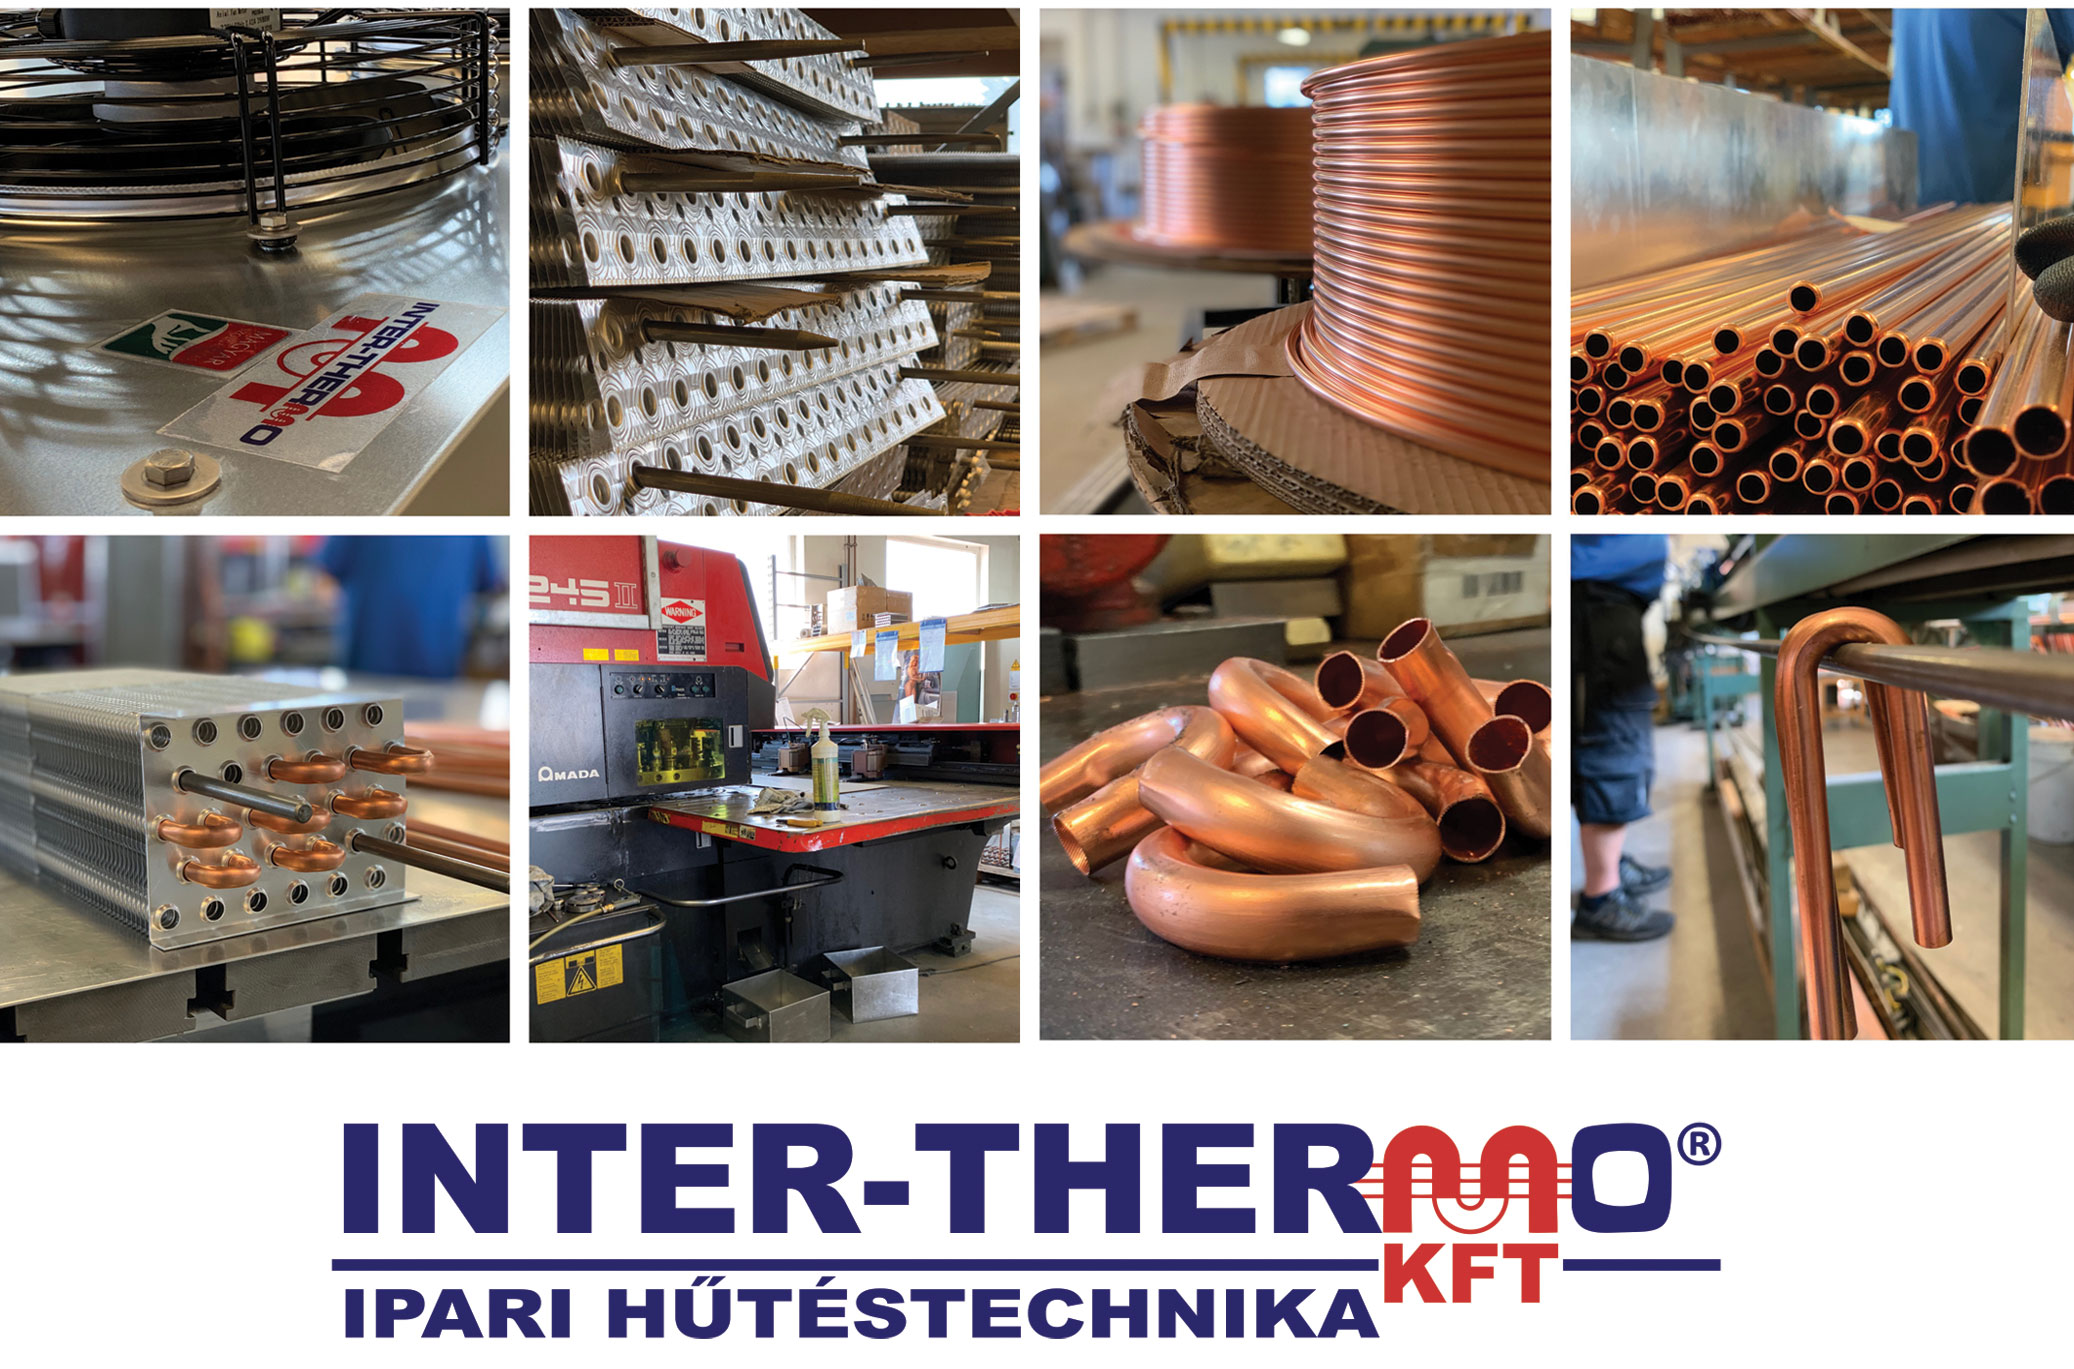 Inter-Thermo Kft. - Hűtő, Klíma, Szerviz, Ipari Hűtéstechnika, Hőcserélő és kondenzátor gyártás